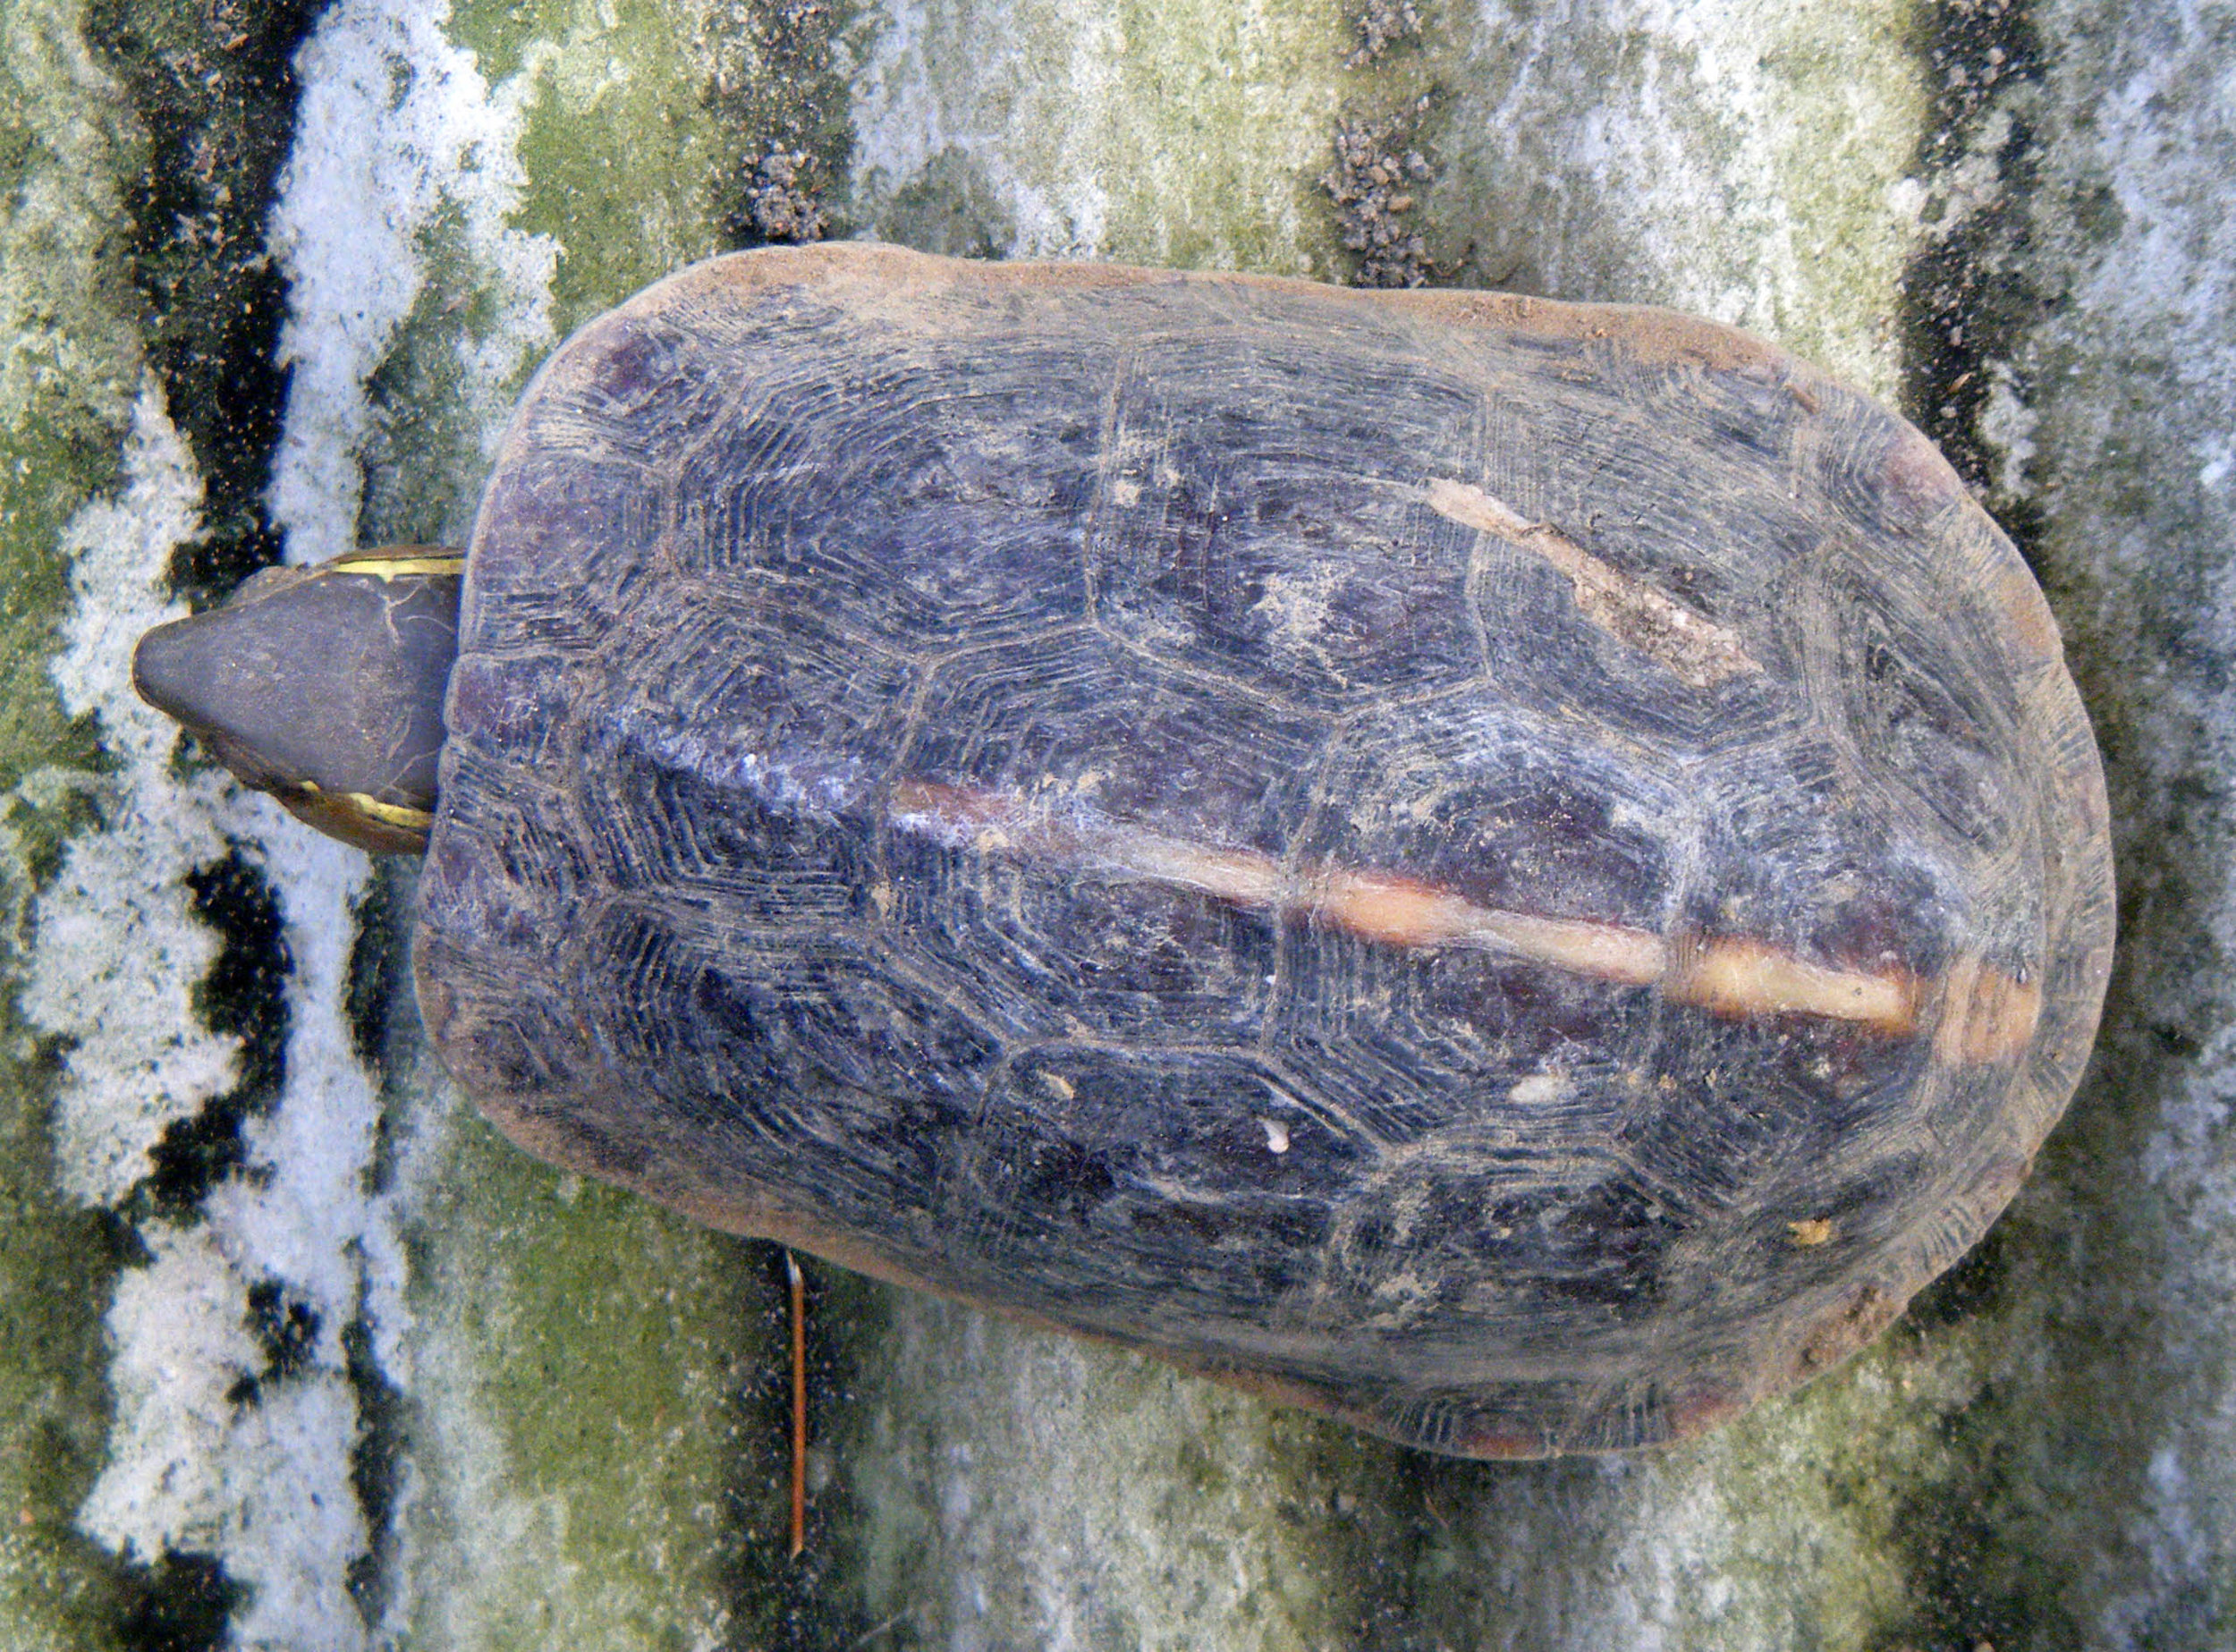 pet turtle.jpg